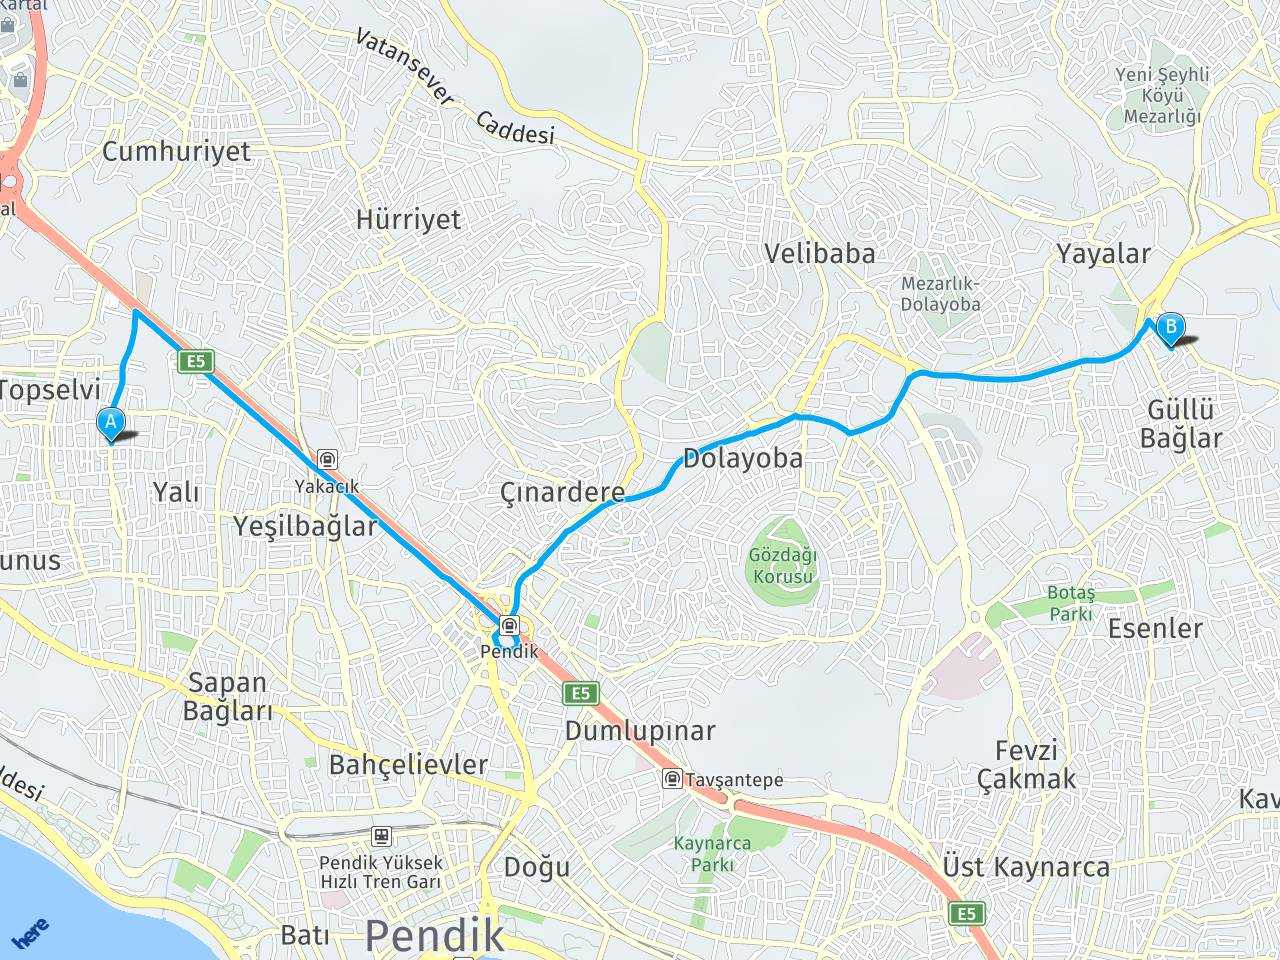 Topselvi caddesi İstanbul İstanbul Pendik Köprüsü haritası